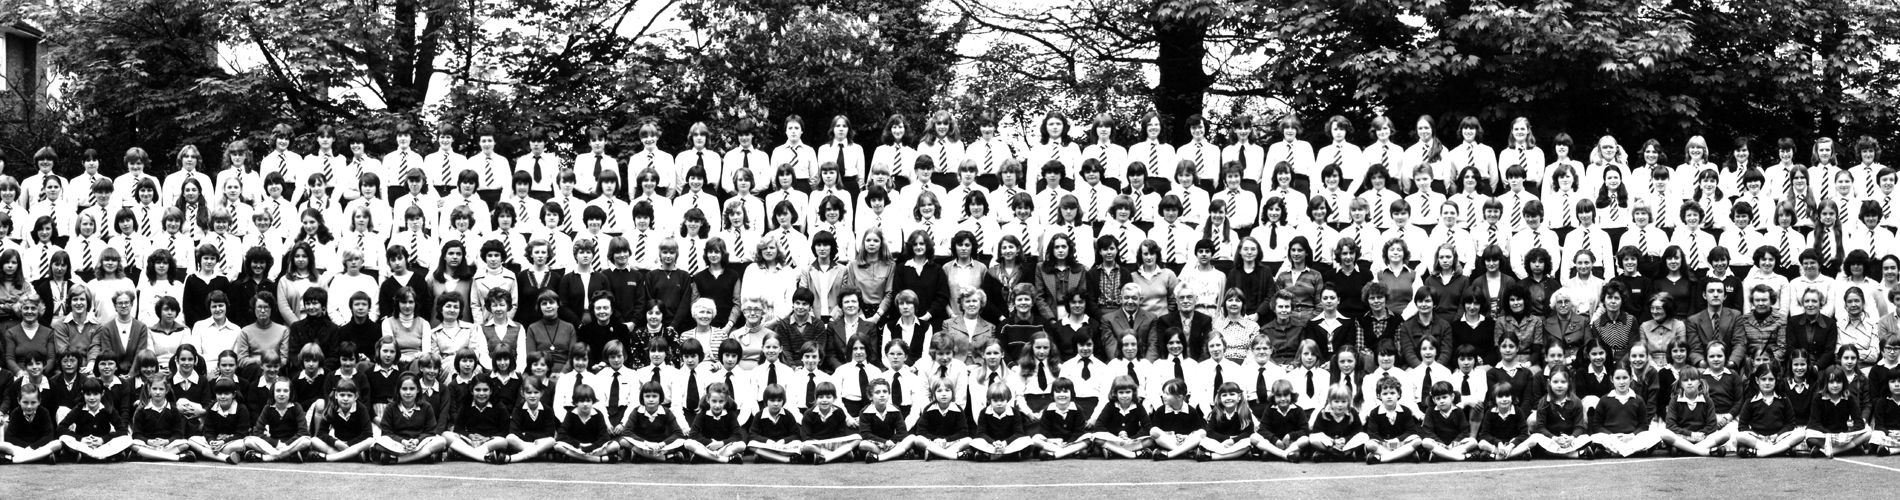 1980 School